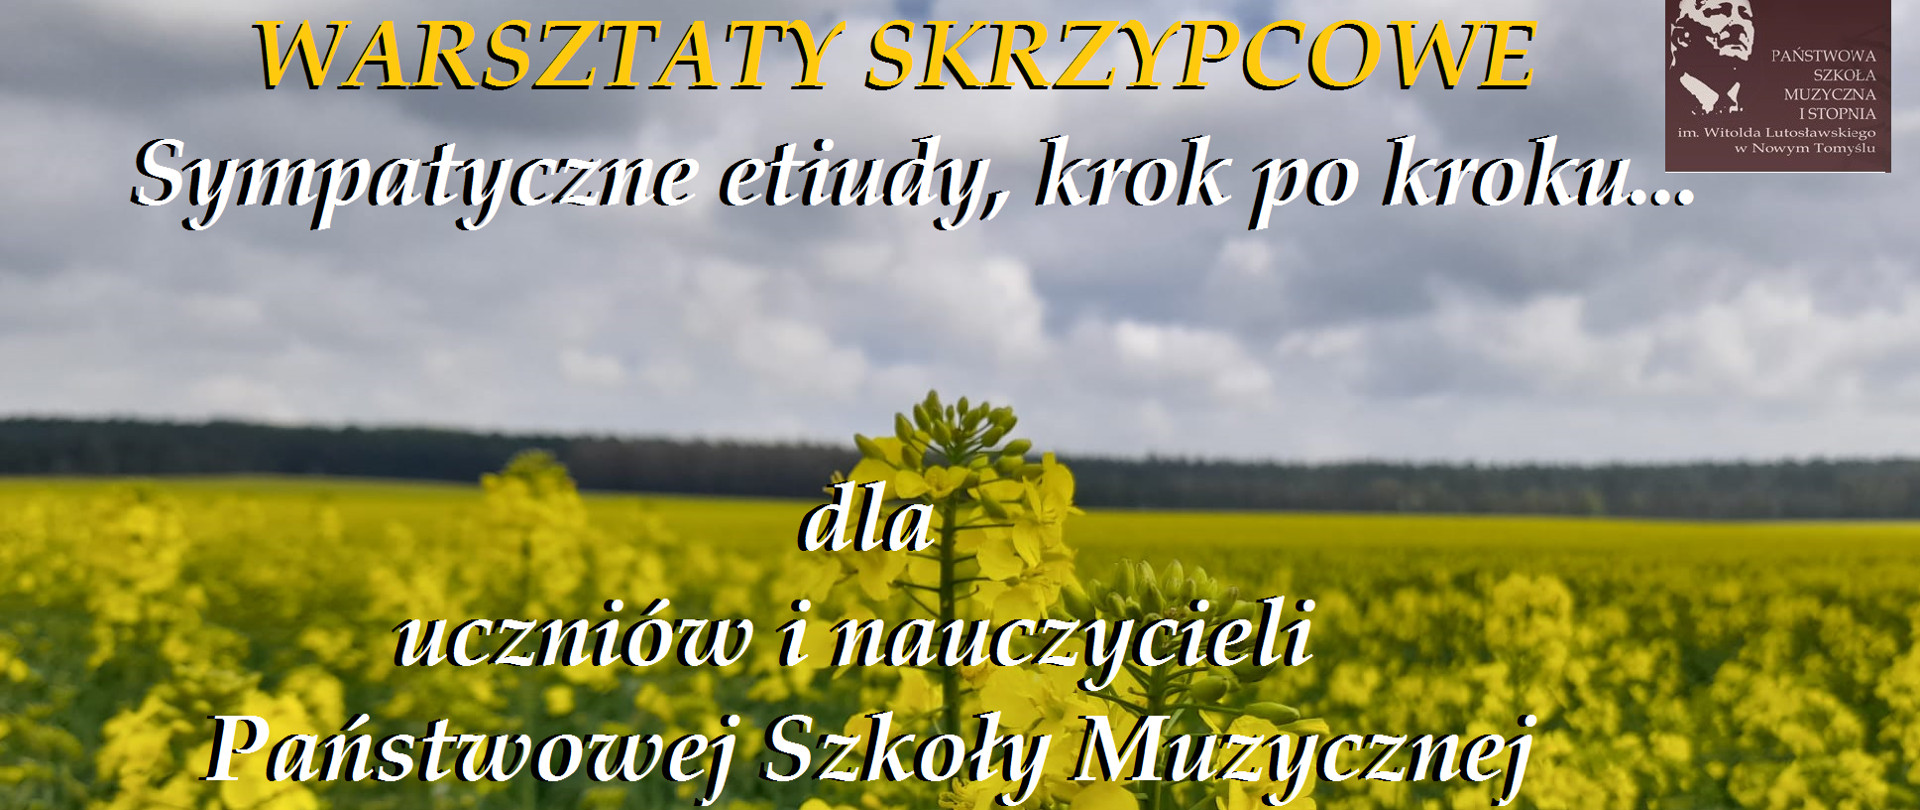 Plakat ze zdjęciem nieba oraz pola rzepaku, pośrodku informacja o warsztatach skrzypcowych, które w dniu 05.05.2023 poprowadzi p. Małgorzata Tofilska.